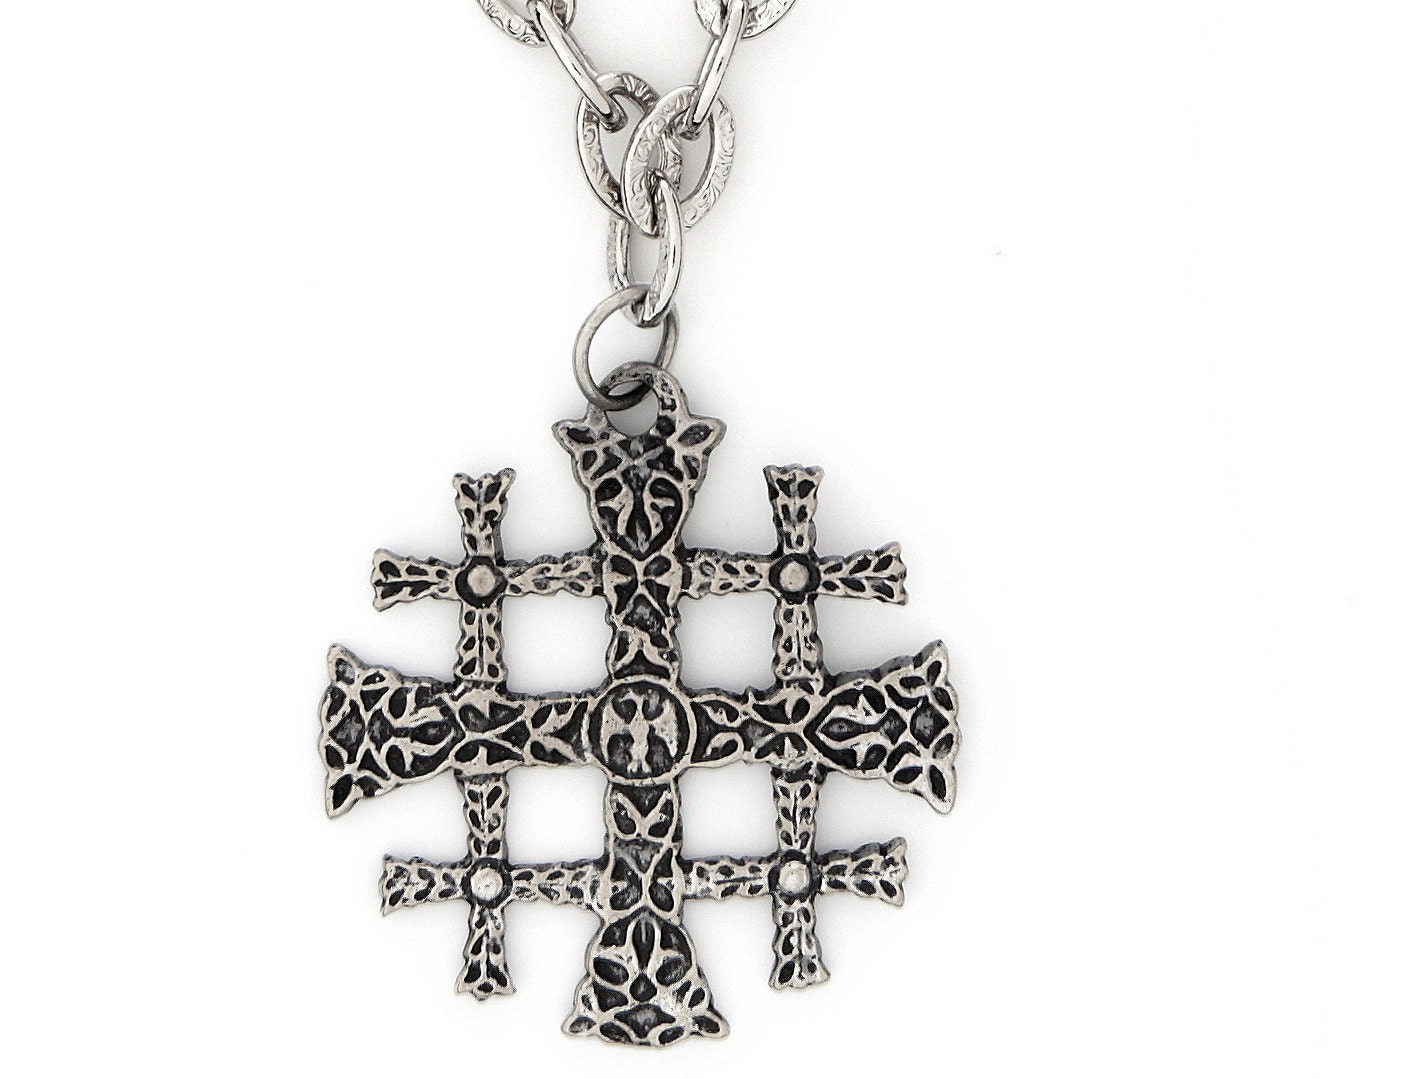 Jerusalem Cross on Chain Necklace